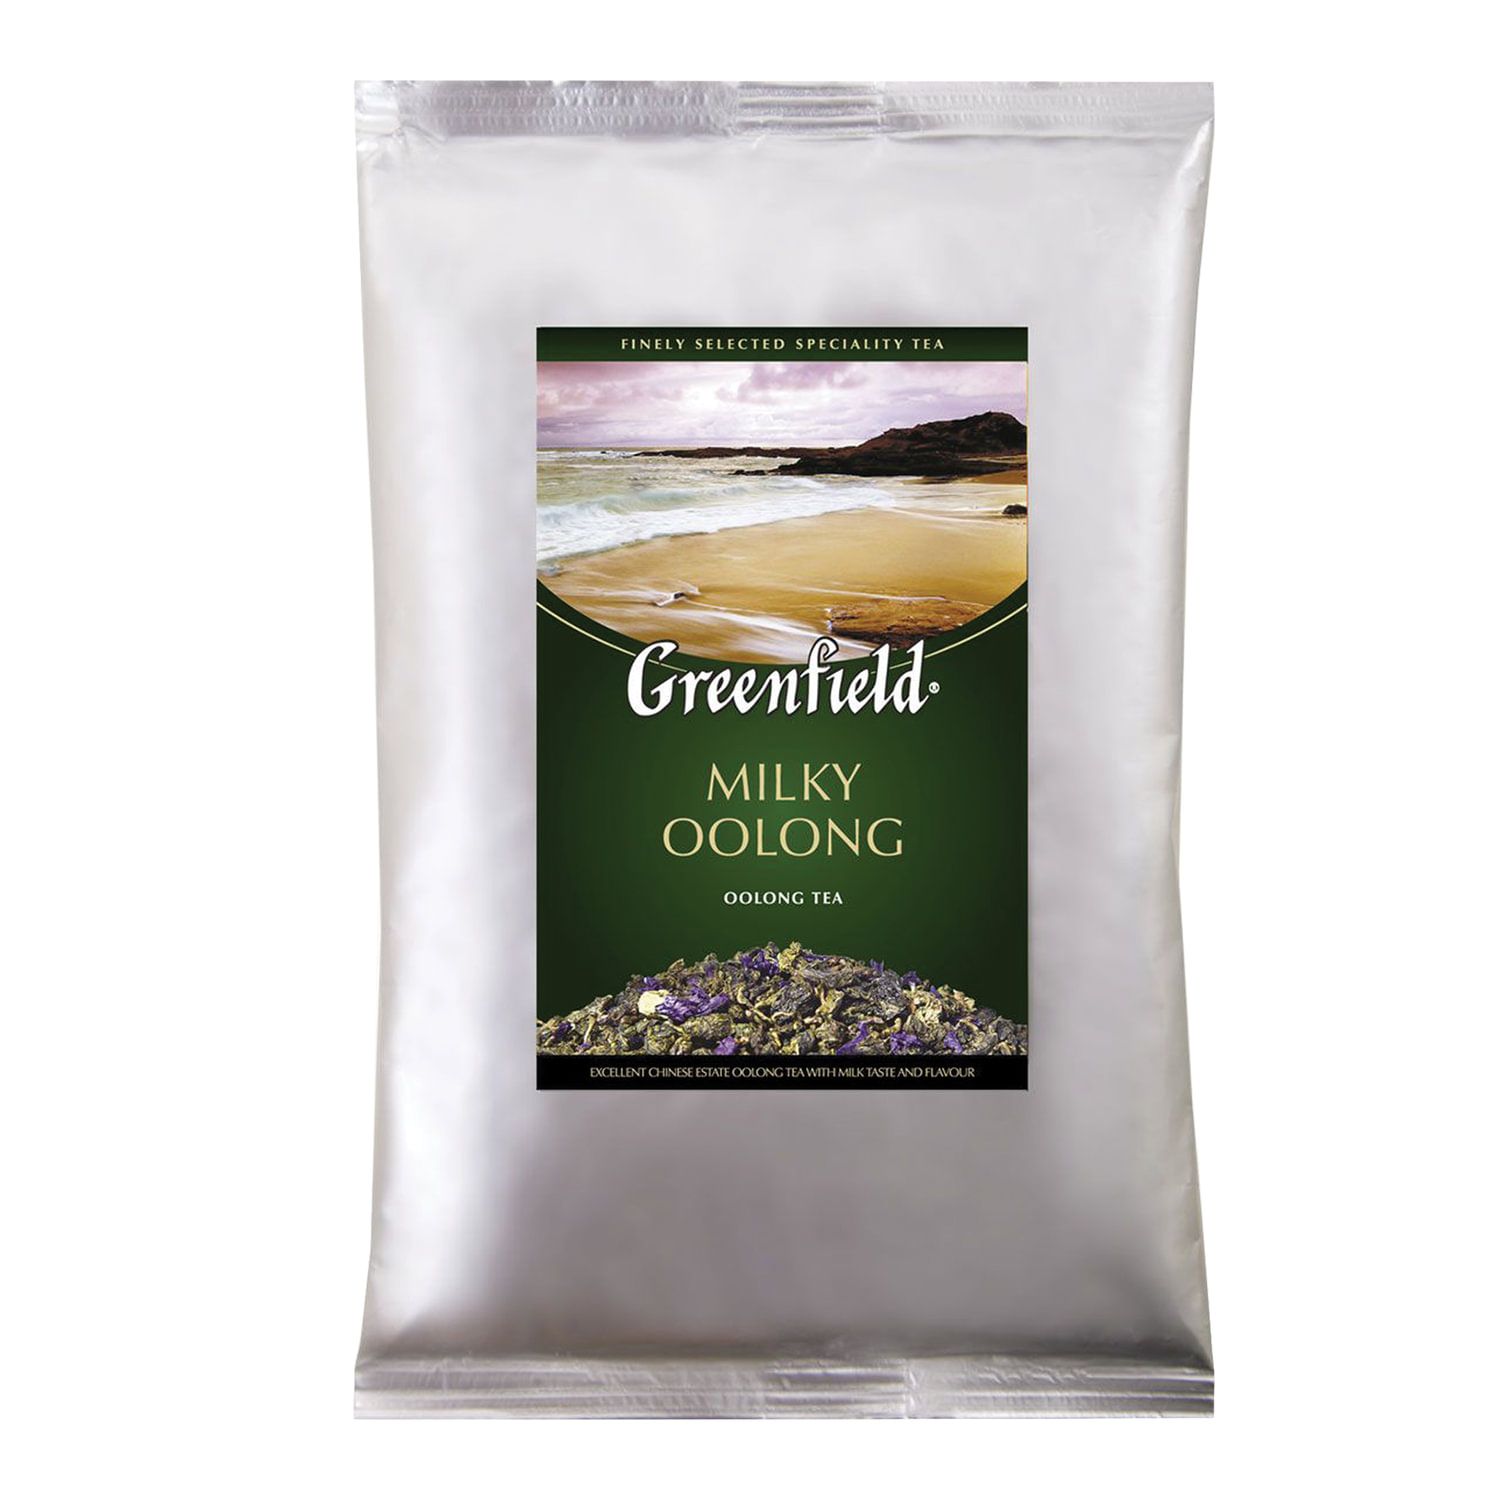 Чай GREENFIELD Milky Oolong 0980-15, улун, листовой, 250 г